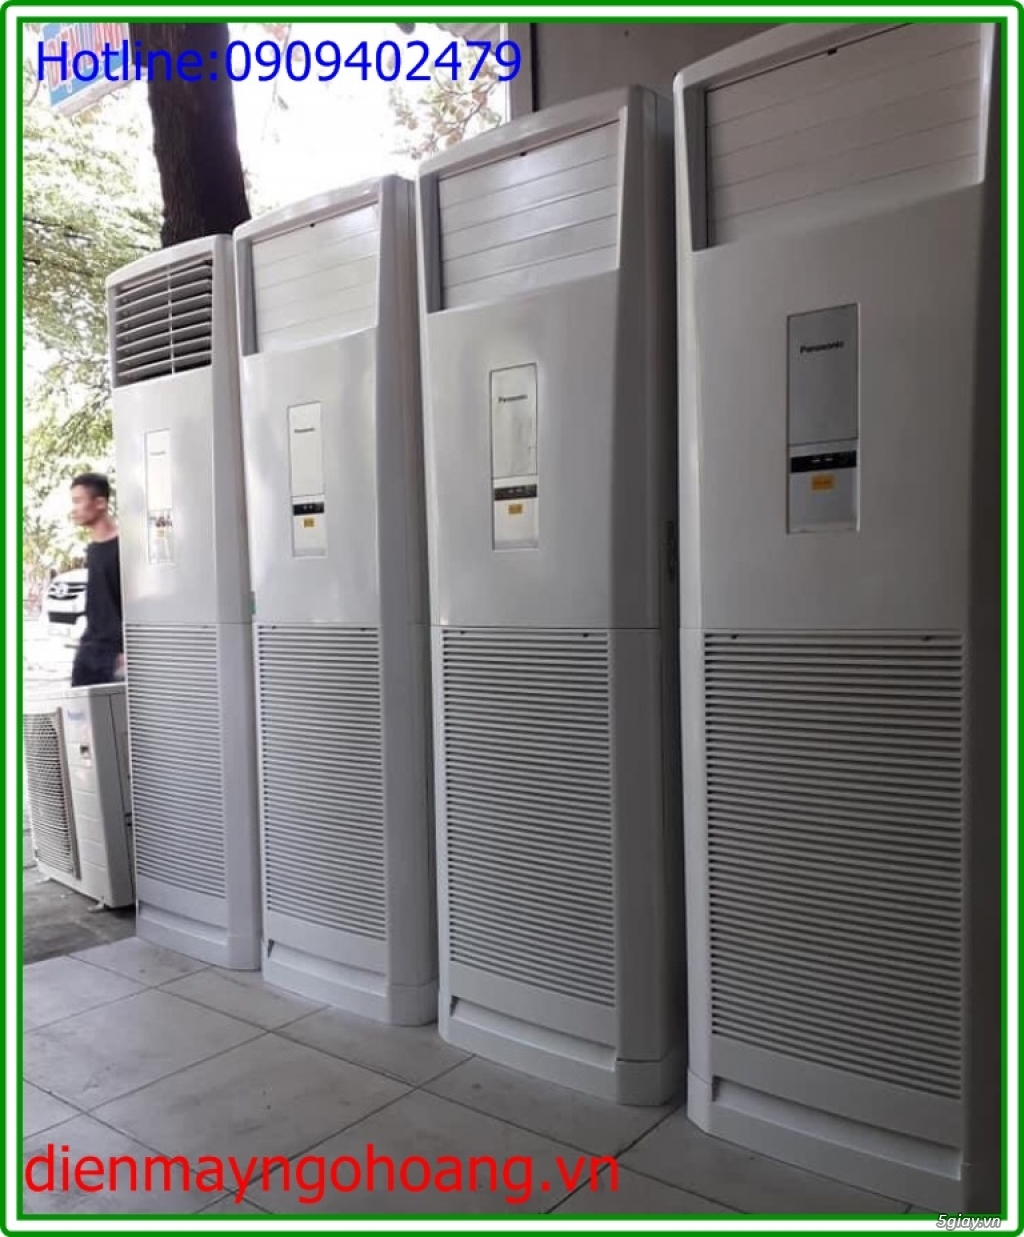 Máy lạnh tủ đứng cũ 5hp , 5.5hp ( LG,Daikin,Samsung,Panasonic,Funiki) - 2